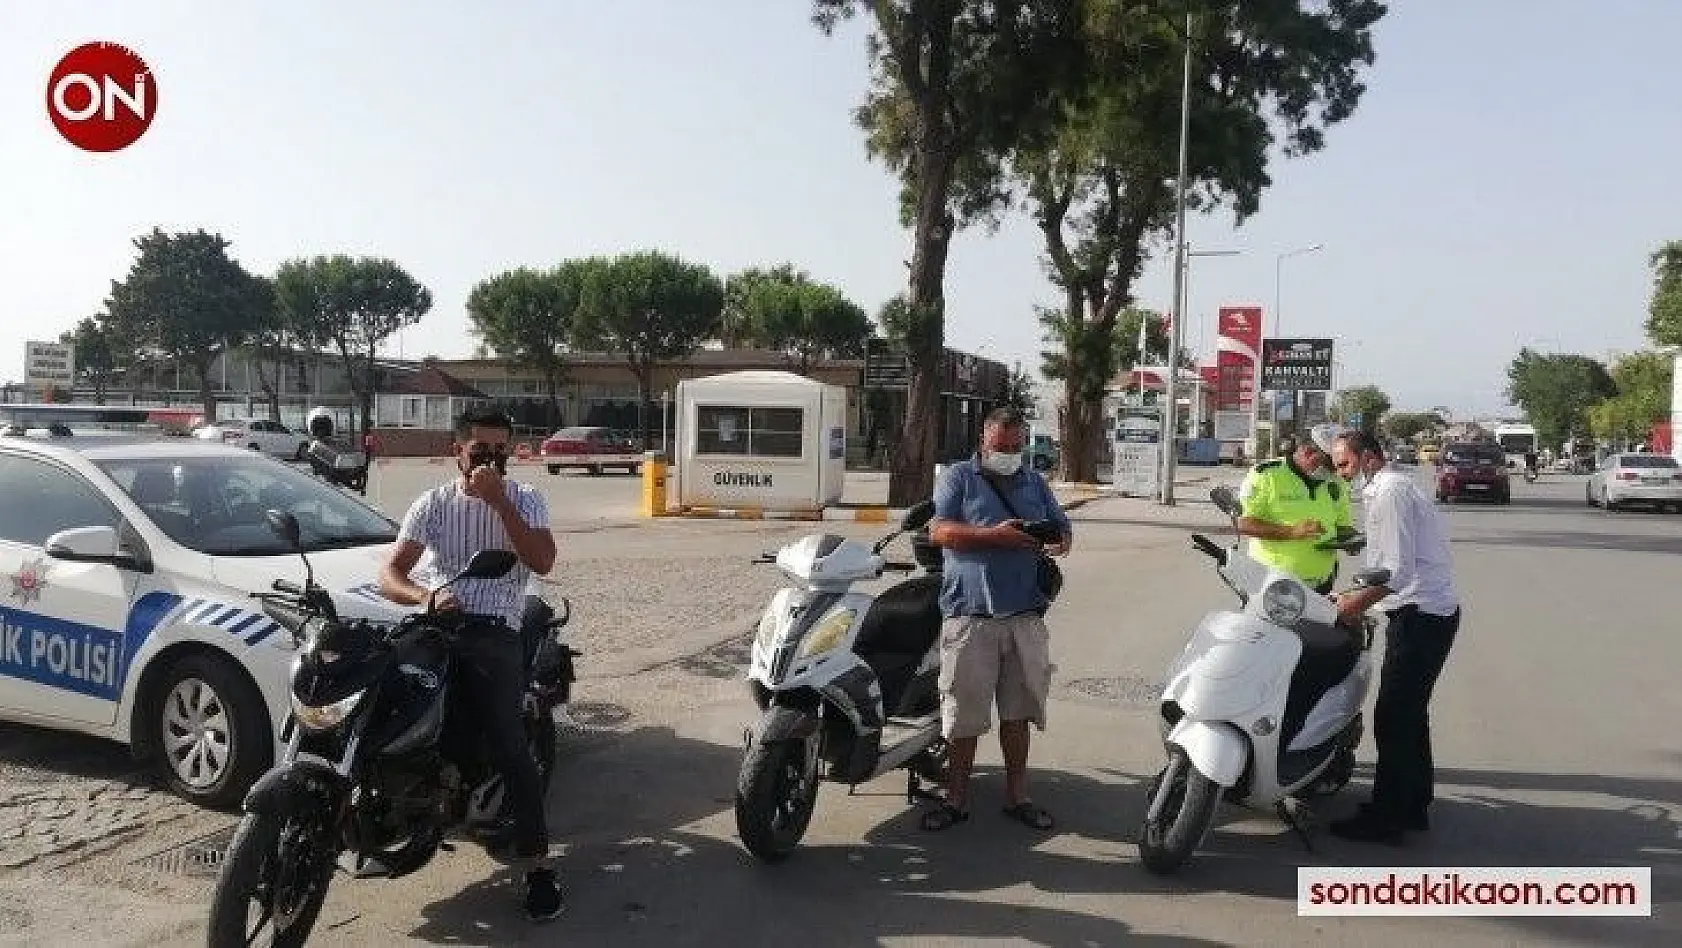 Ayvalık'ta 'kasksız ve tescilsiz' motosiklet kullanan sürücülere yönelik uygulama başlatıldı